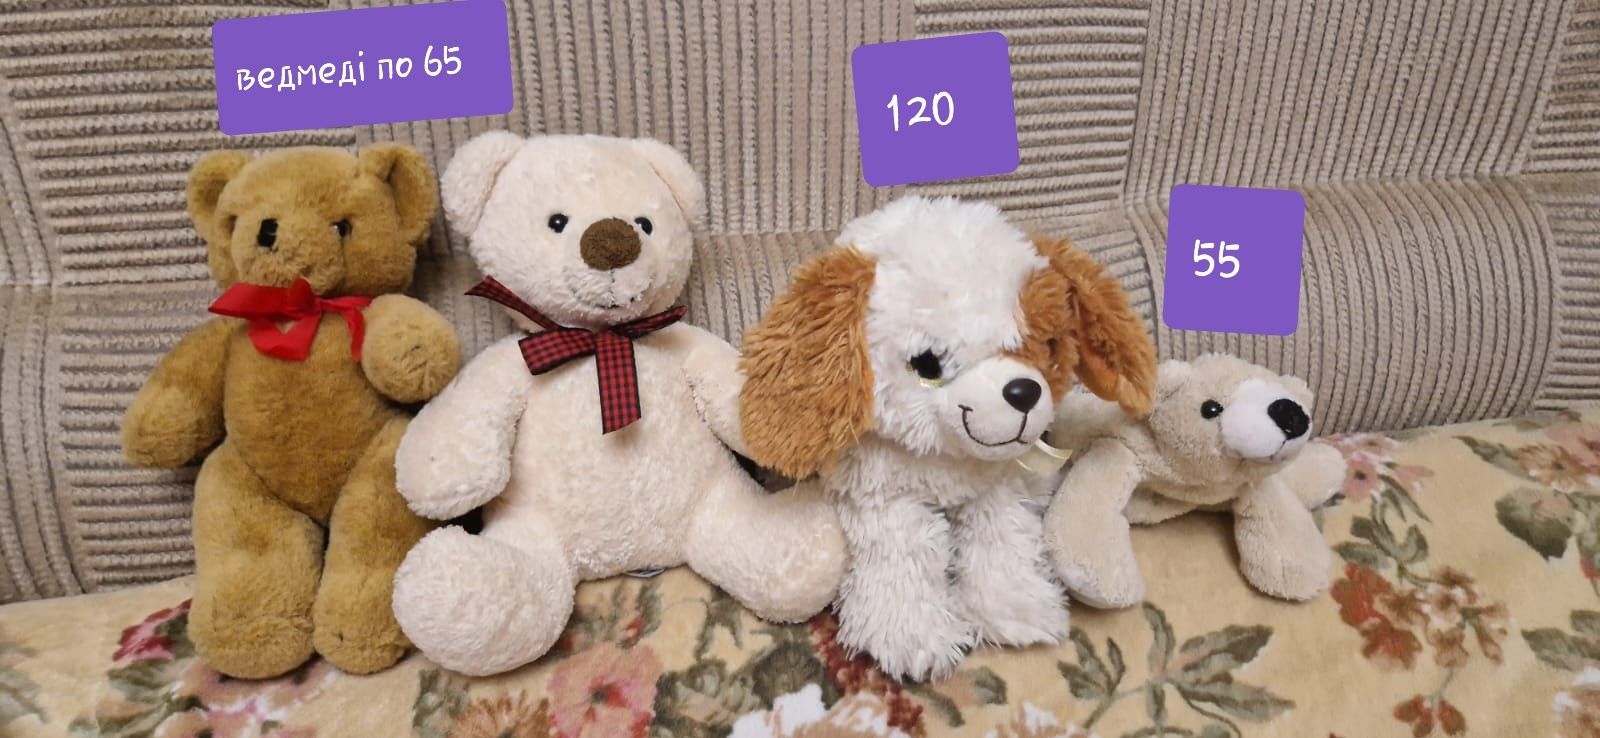 М'які іграшки TY, ведмедик Барні, собака, Teddy bear